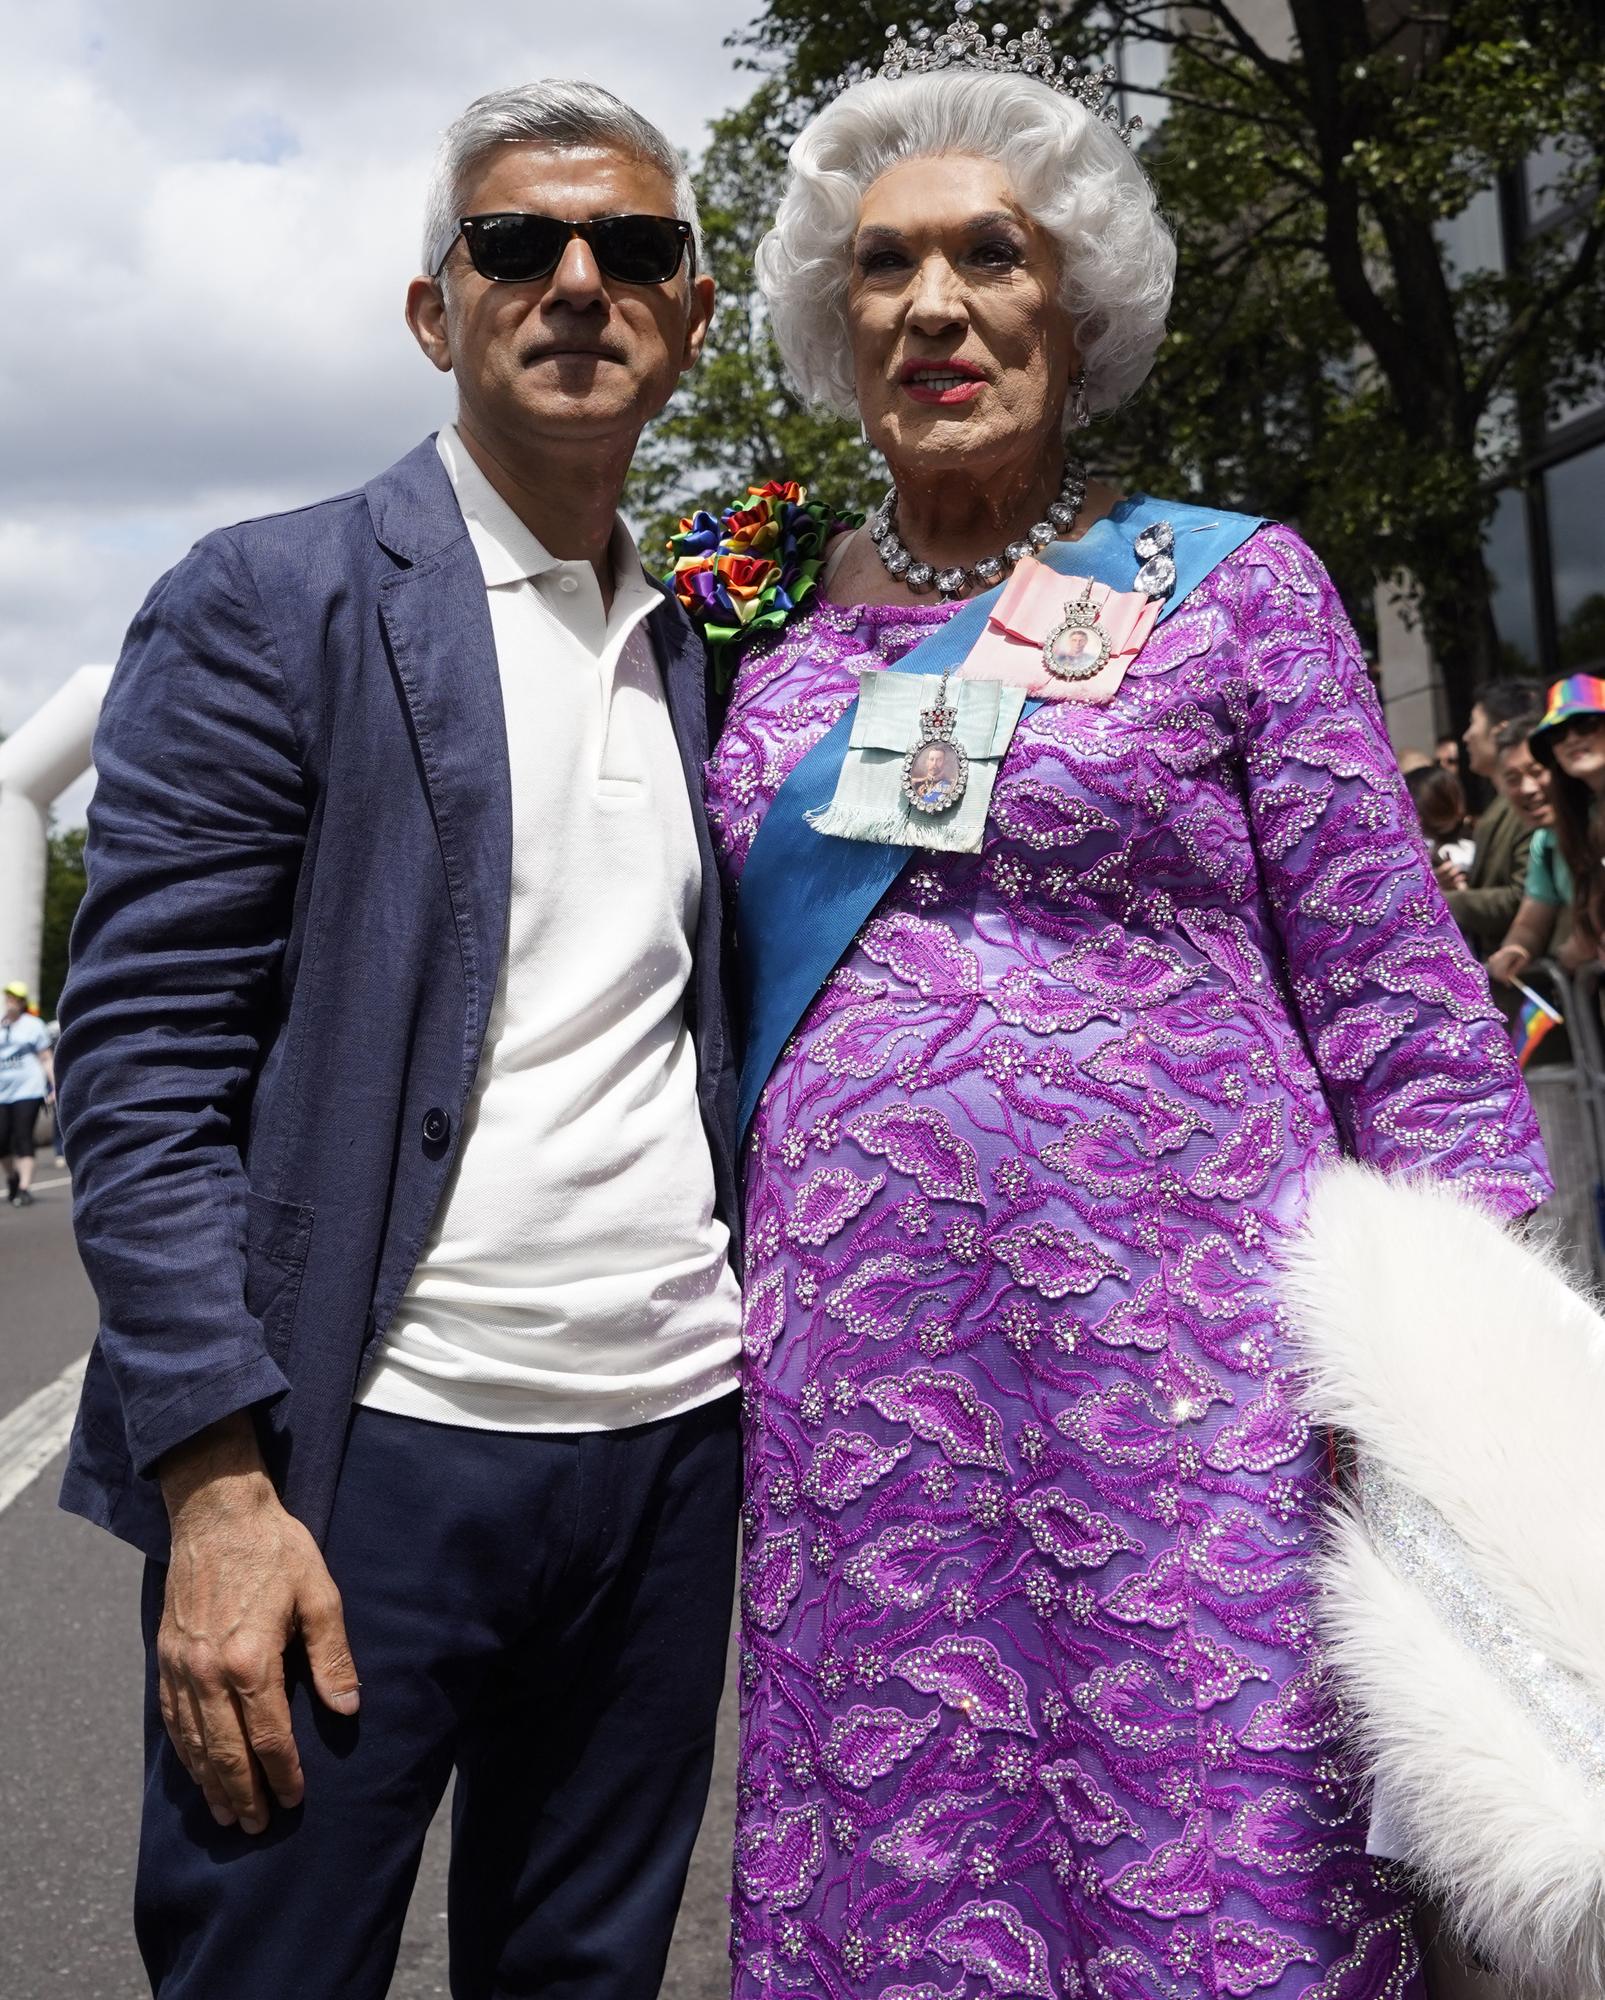 Le maire de Londres Sadiq Khan posant aux côtés d'une personne travestie en reine. [AFP - Niklas Hallen]